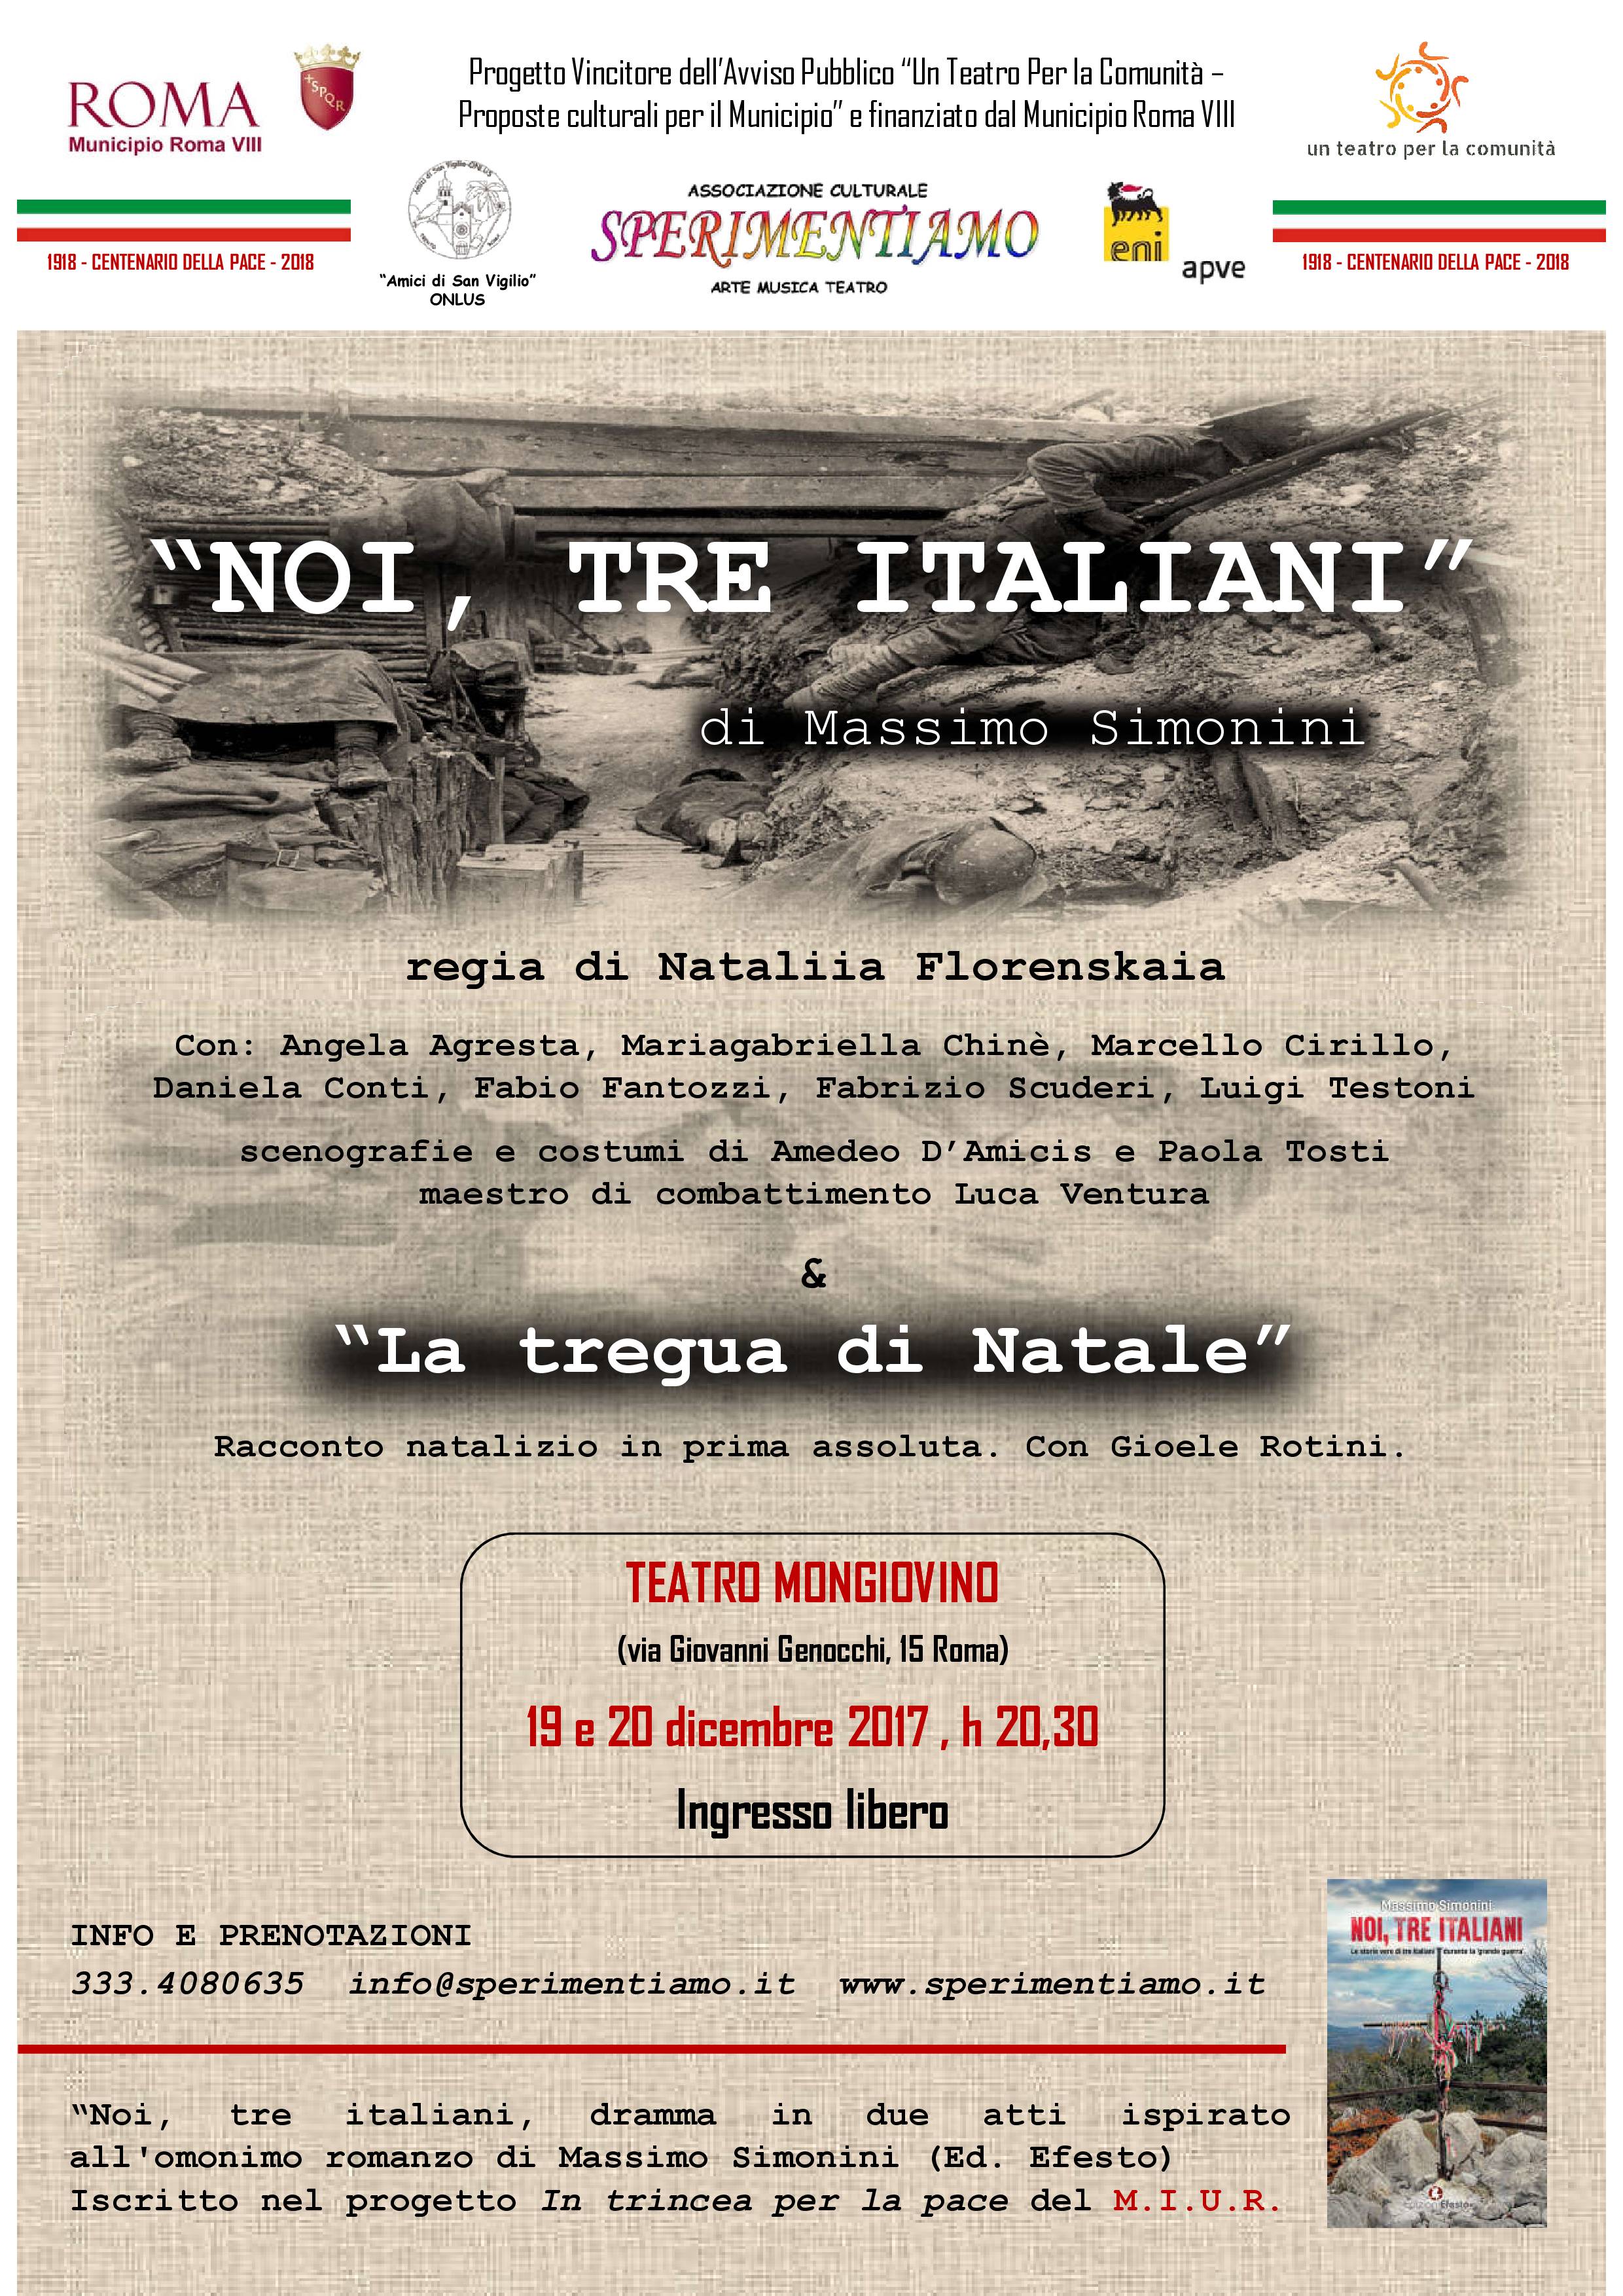 Foto 1 - Lo spettacolo teatrale “Noi, tre Italiani” al Teatro Mongiovino di Roma il 19 e 20 dicembre. Ingresso gratuito